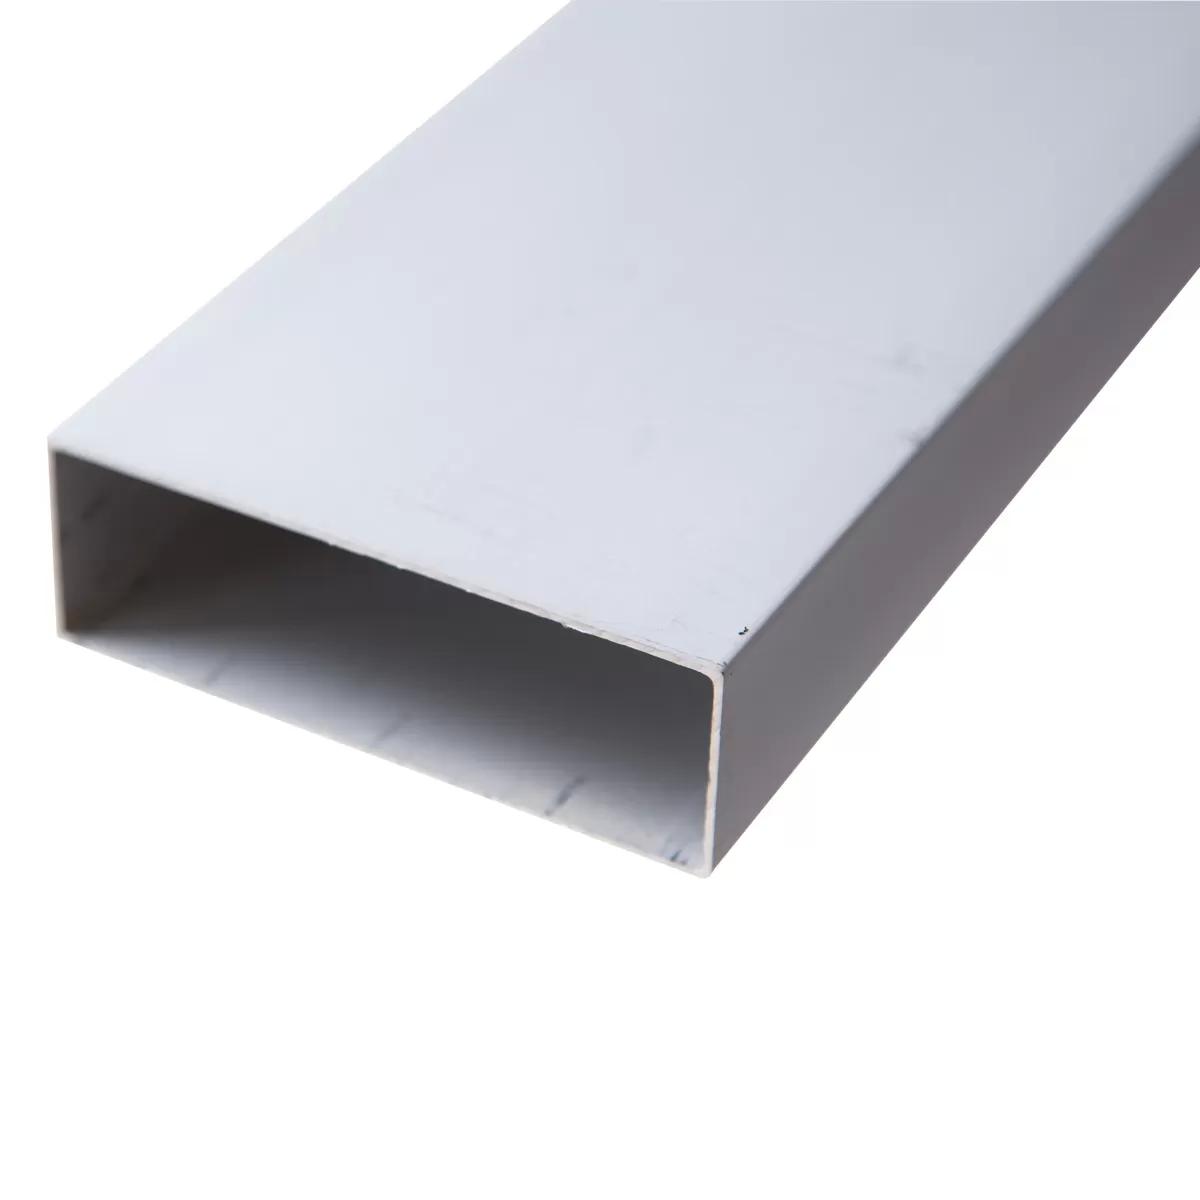 Aluminium bar 6.5 ft / 2m 